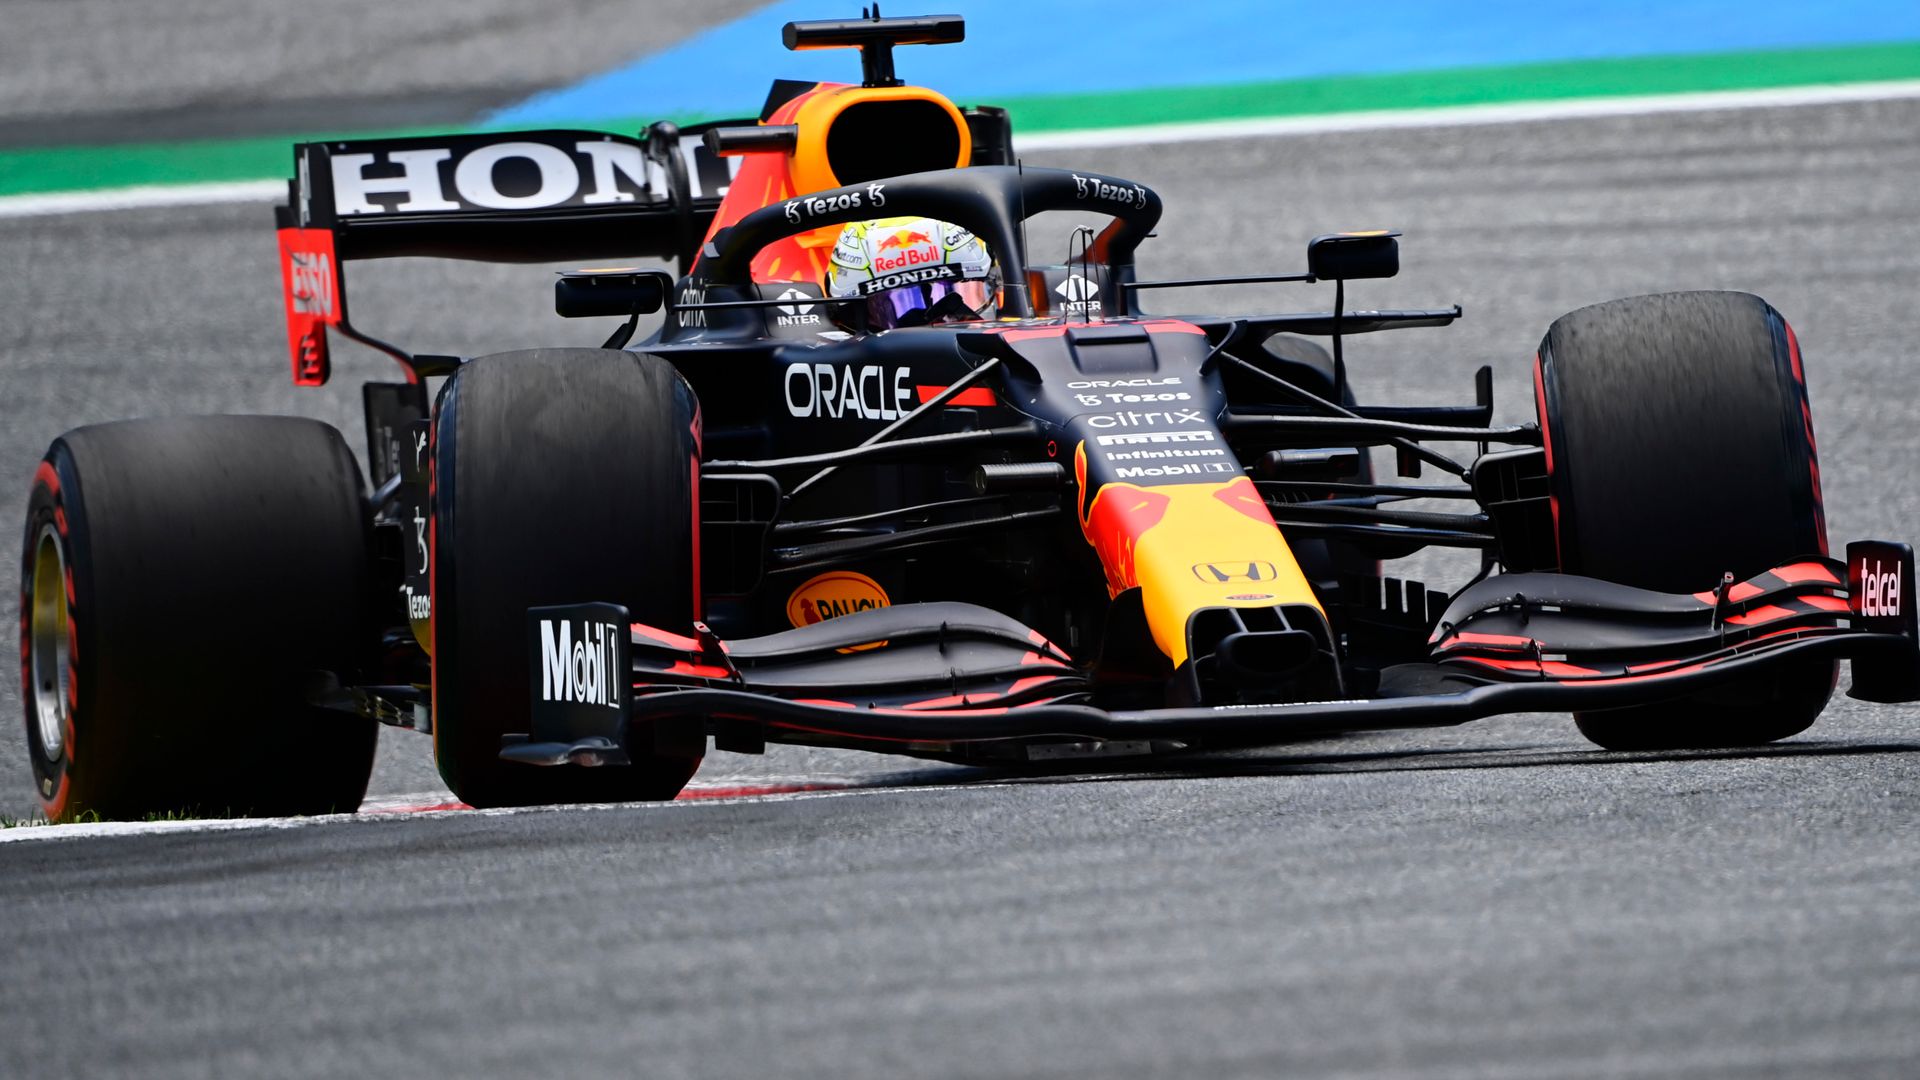 Verstappen takes crushing win over Hamilton - News ...